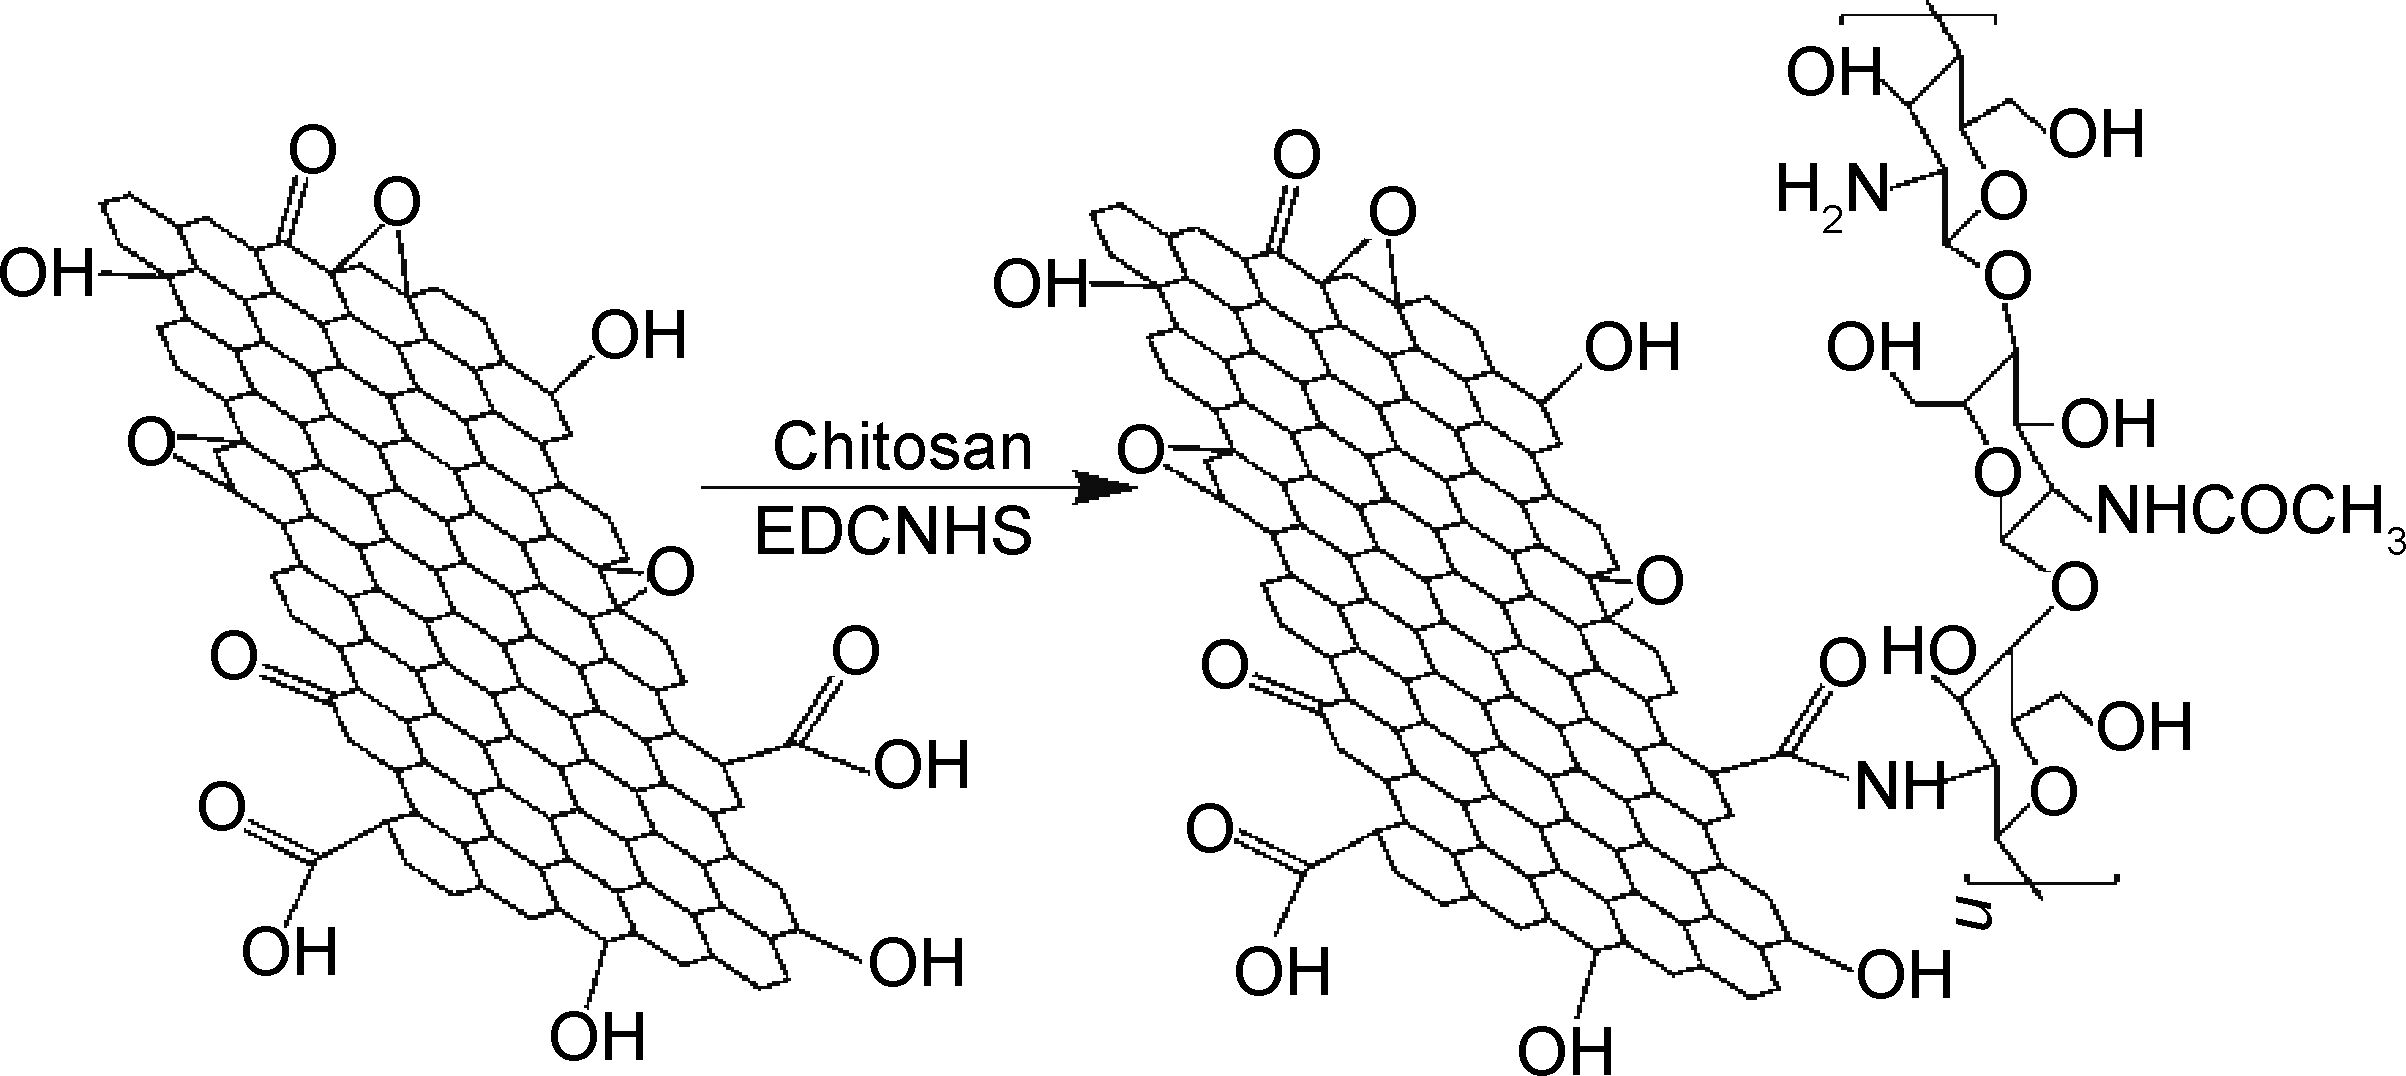 氧化石墨烯/壳聚糖复合材料的制备过程fig.